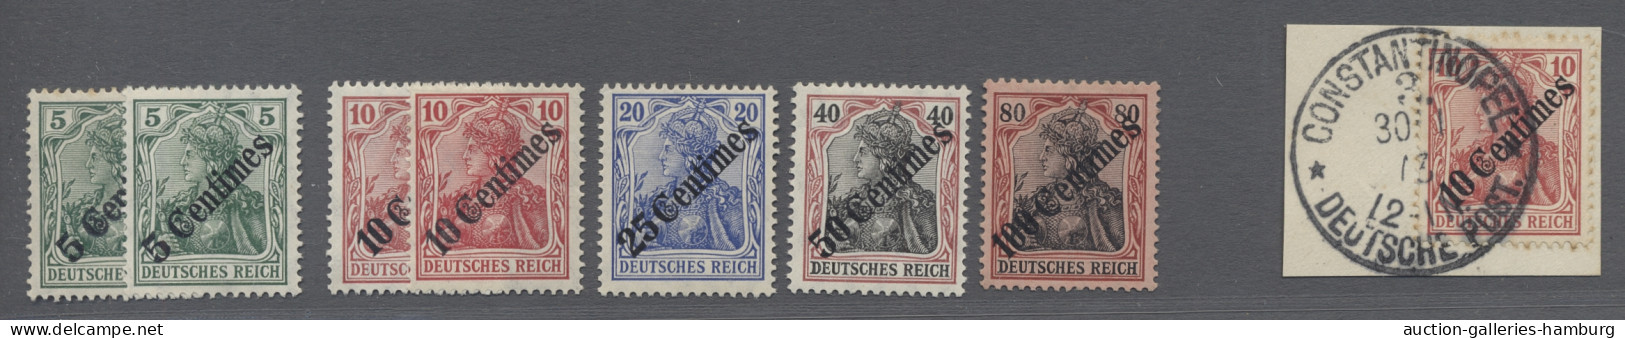 **/*/o Deutsche Post in Marokko: 1908, Germania mit diagonalem Aufdruck, 5 C. - 100 C.